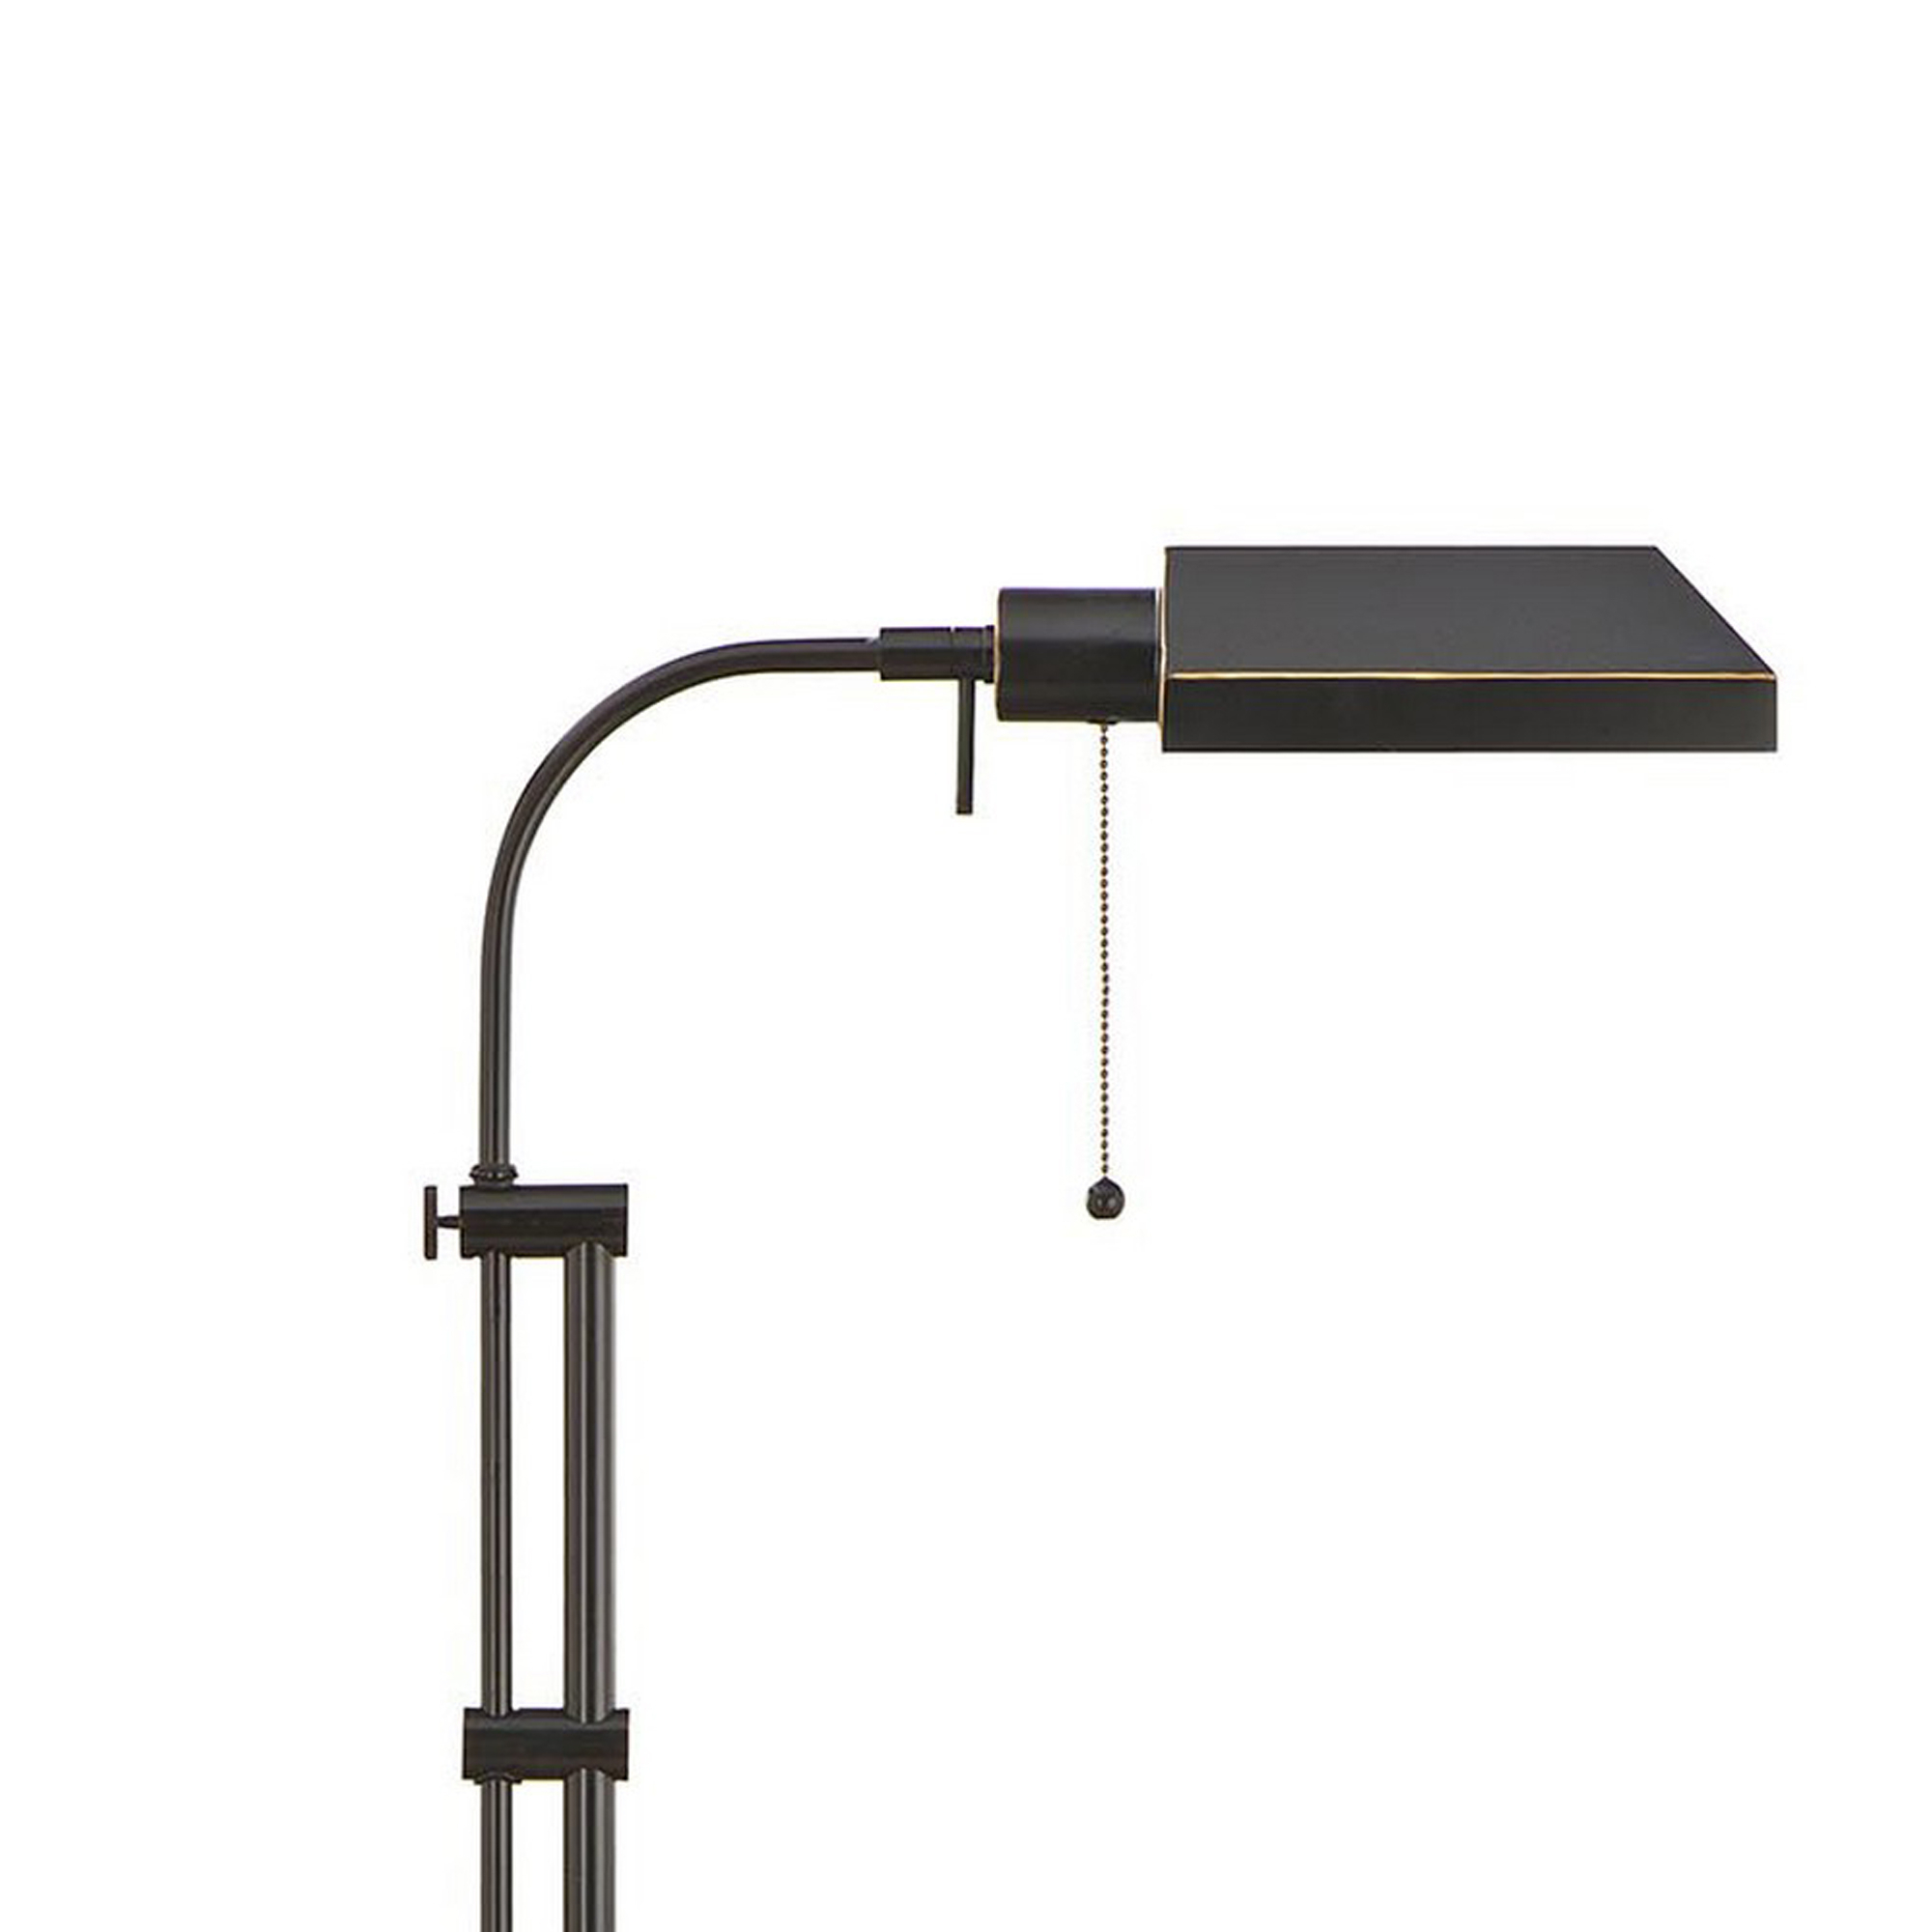 Metal Rectangular Floor Lamp With Adjustable Pole, Dark Bronze- Saltoro Sherpi